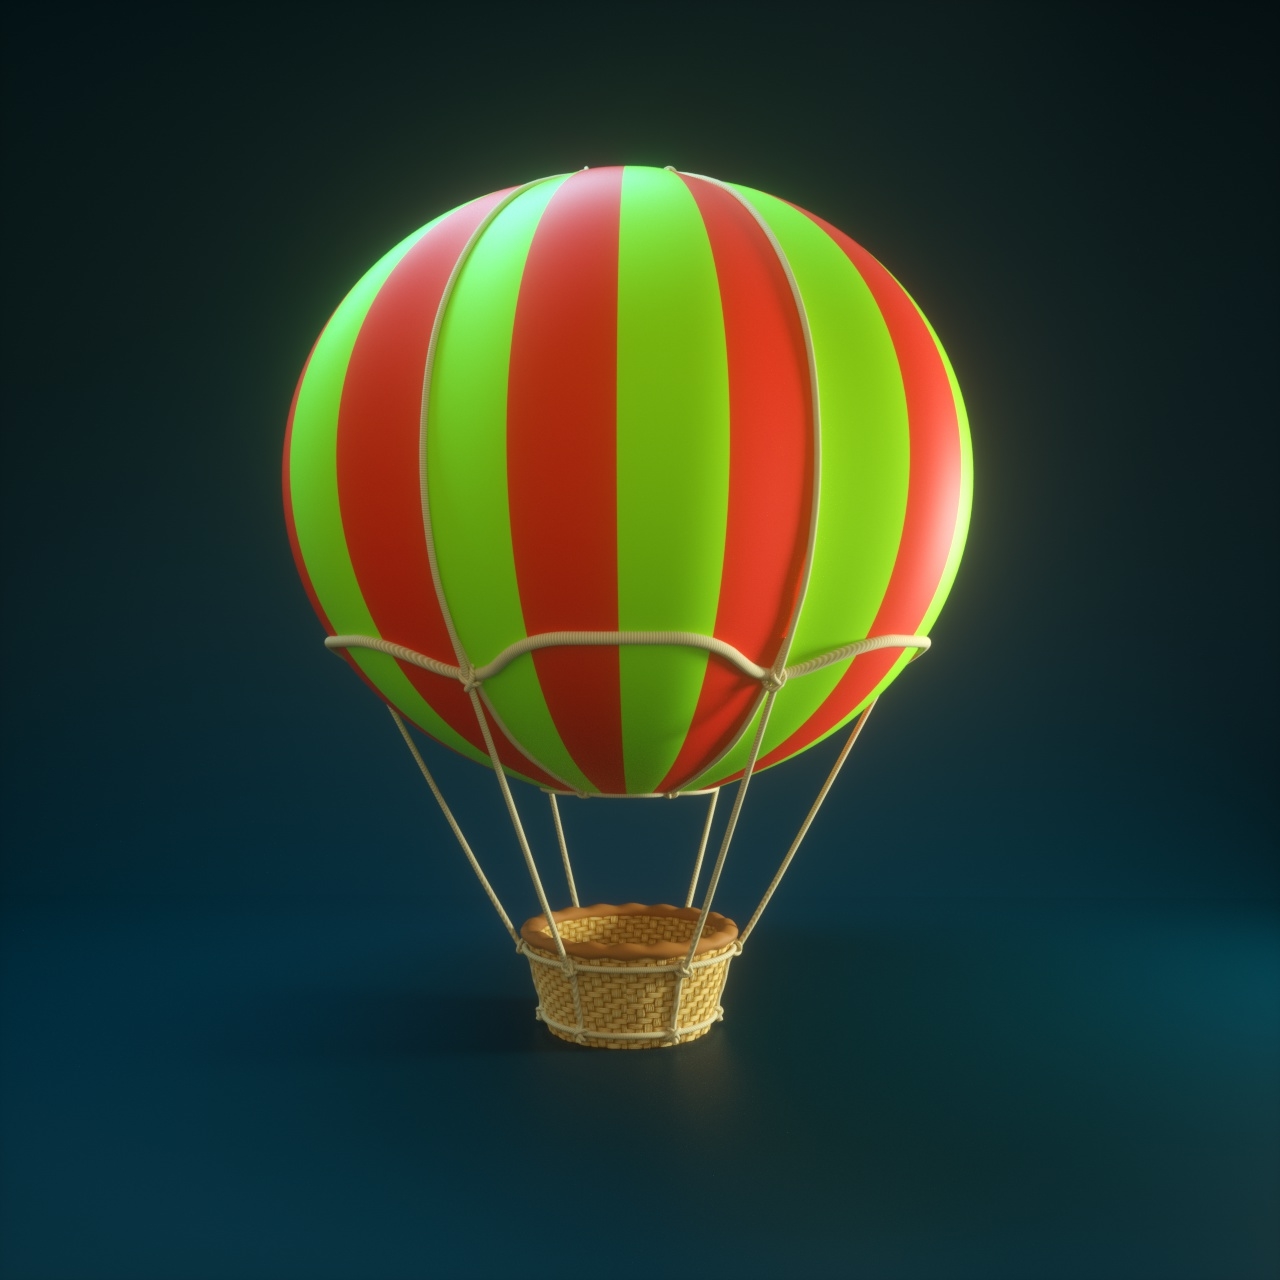 Модели воздушных шаров. Игрушечный воздушный шар. Воздушный шар с корзиной. Модель воздушного шара. Воздушный шар 3d.